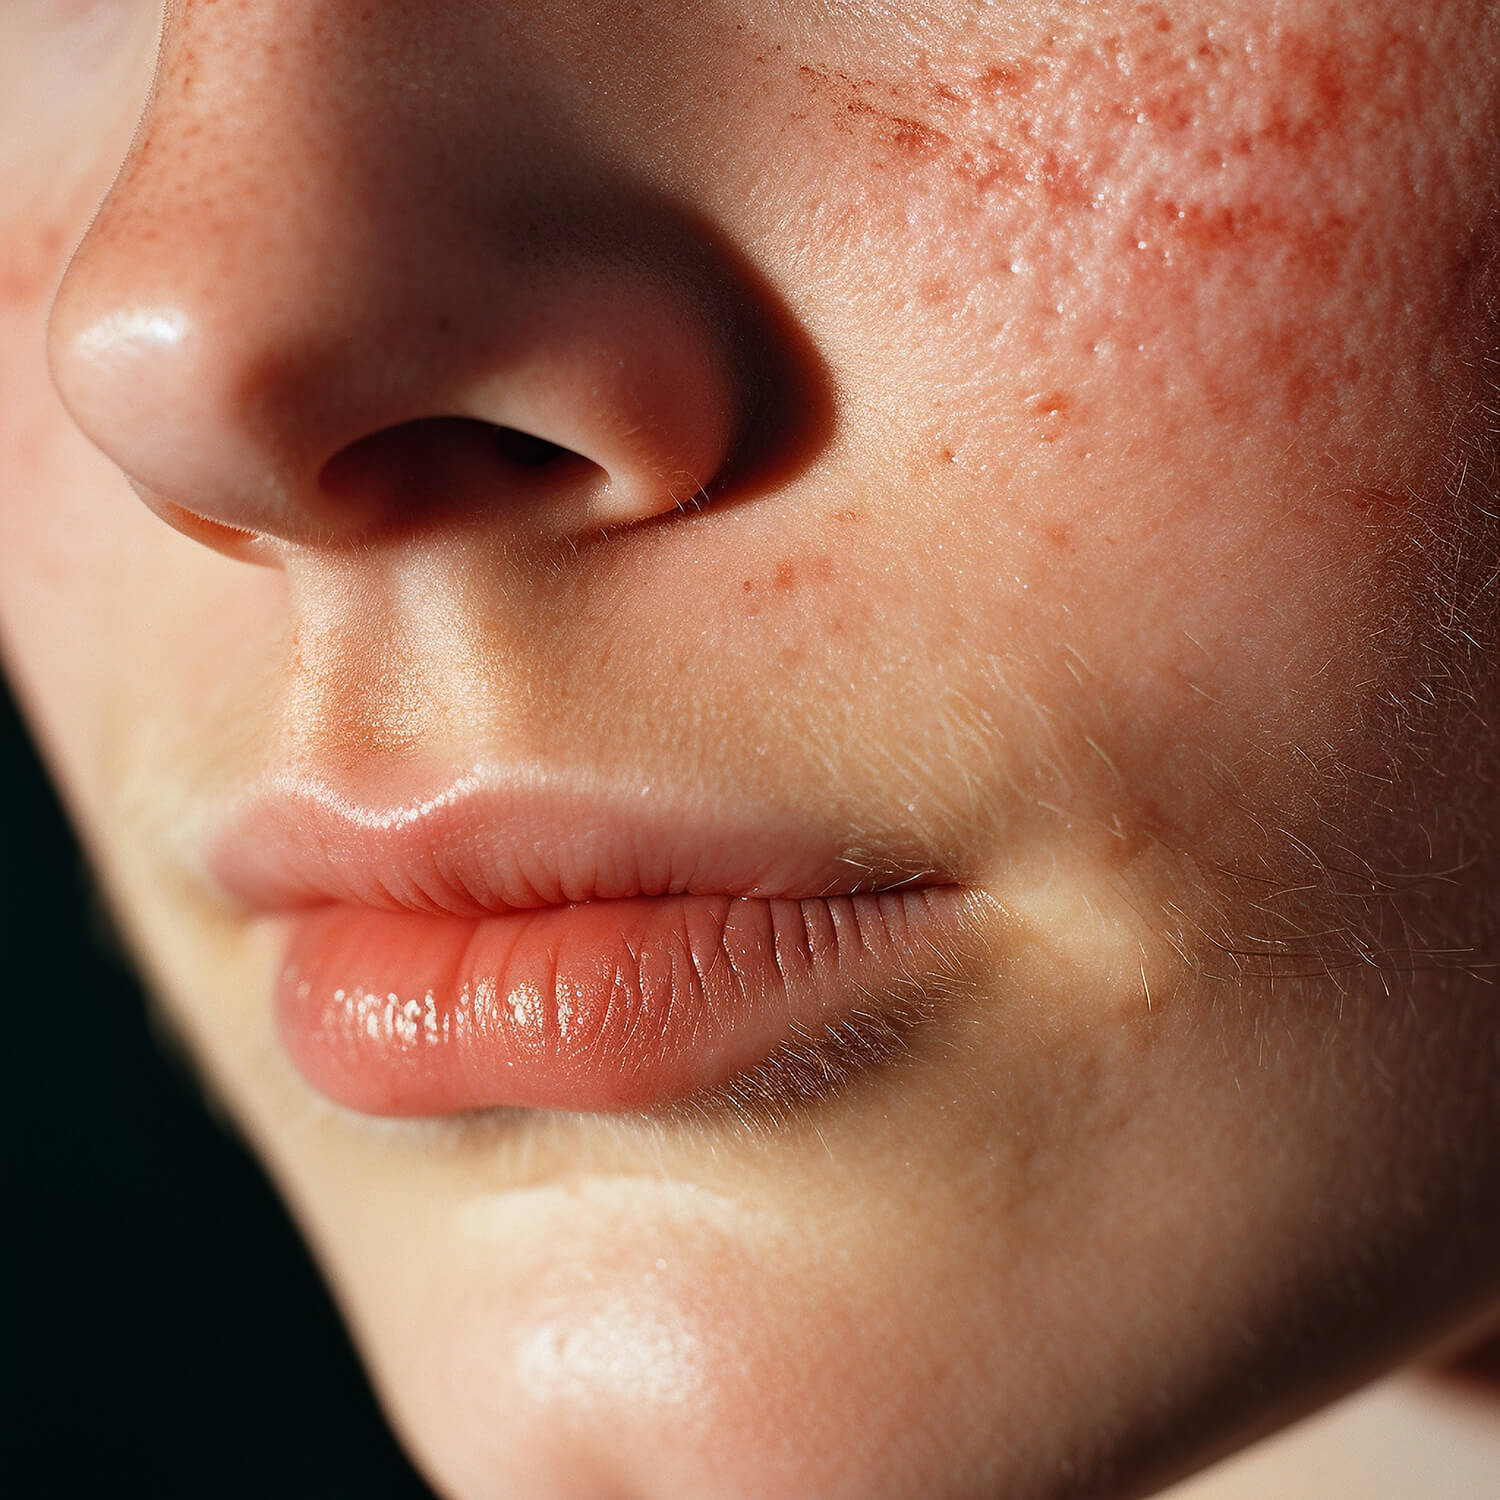 Acne skin condition